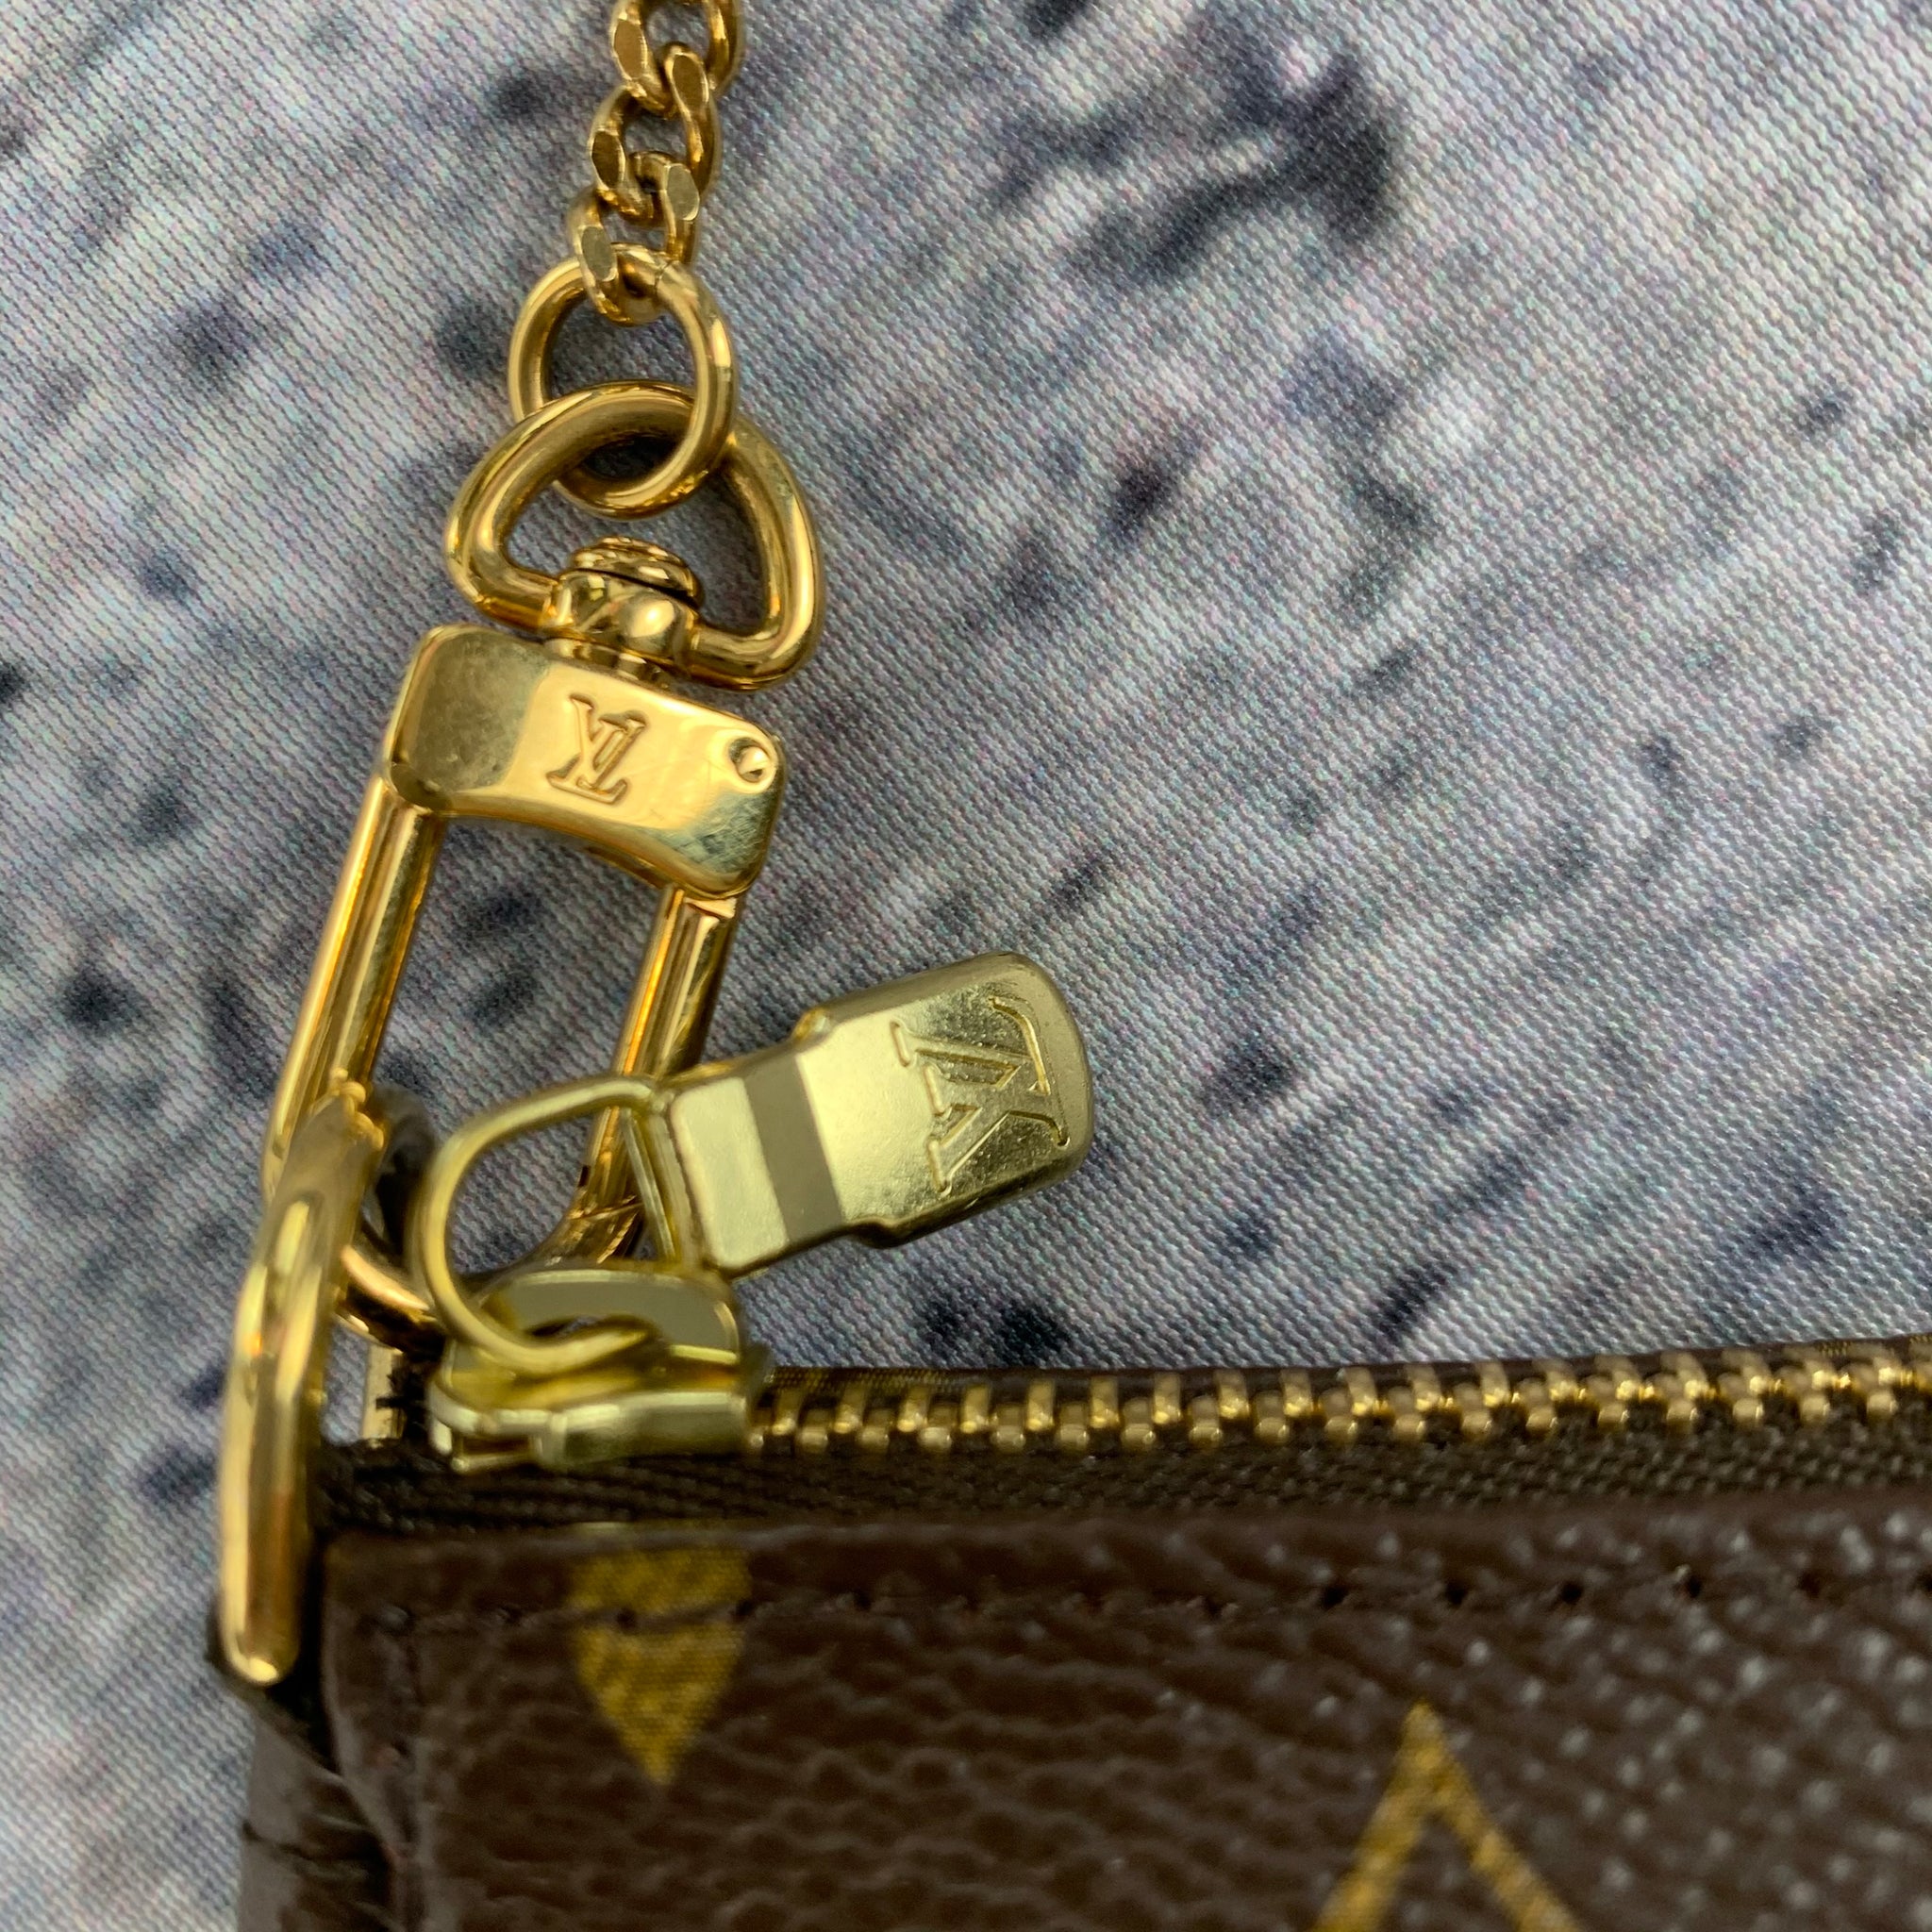 Louis Vuitton Mini Pochette Accessories On Chain Monogram in